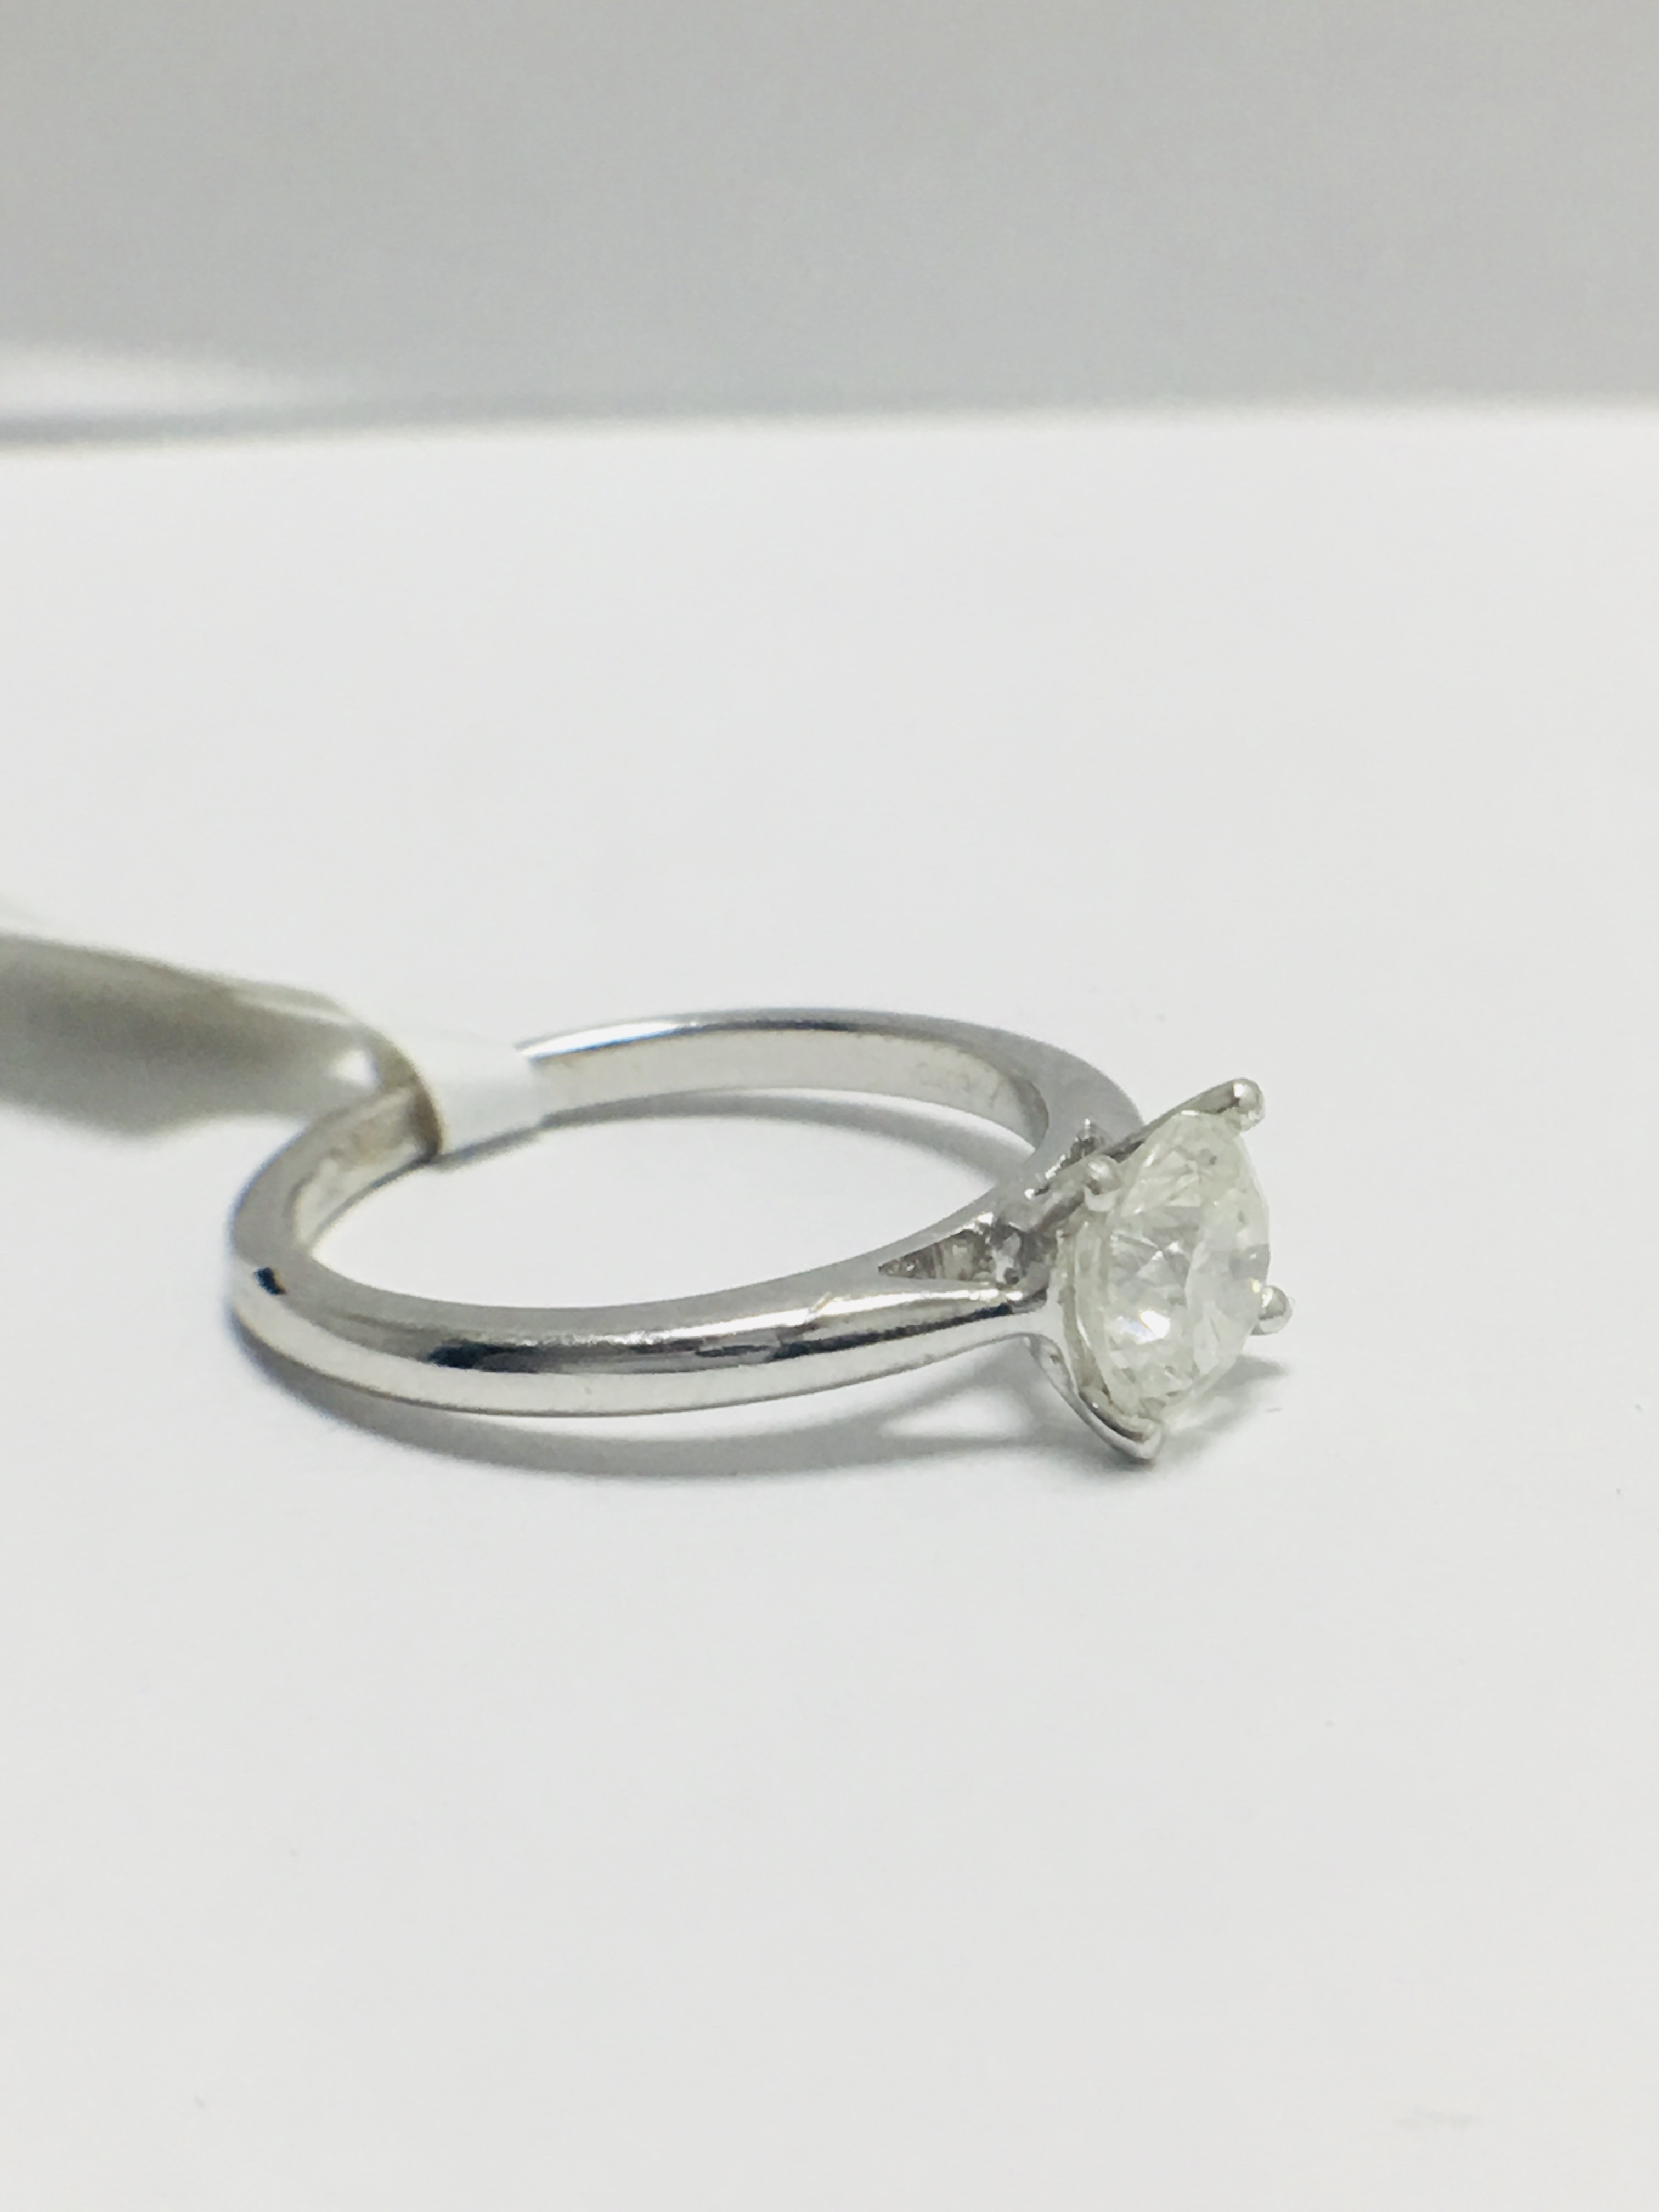 Platinum diamond solitaire ring - Image 5 of 8